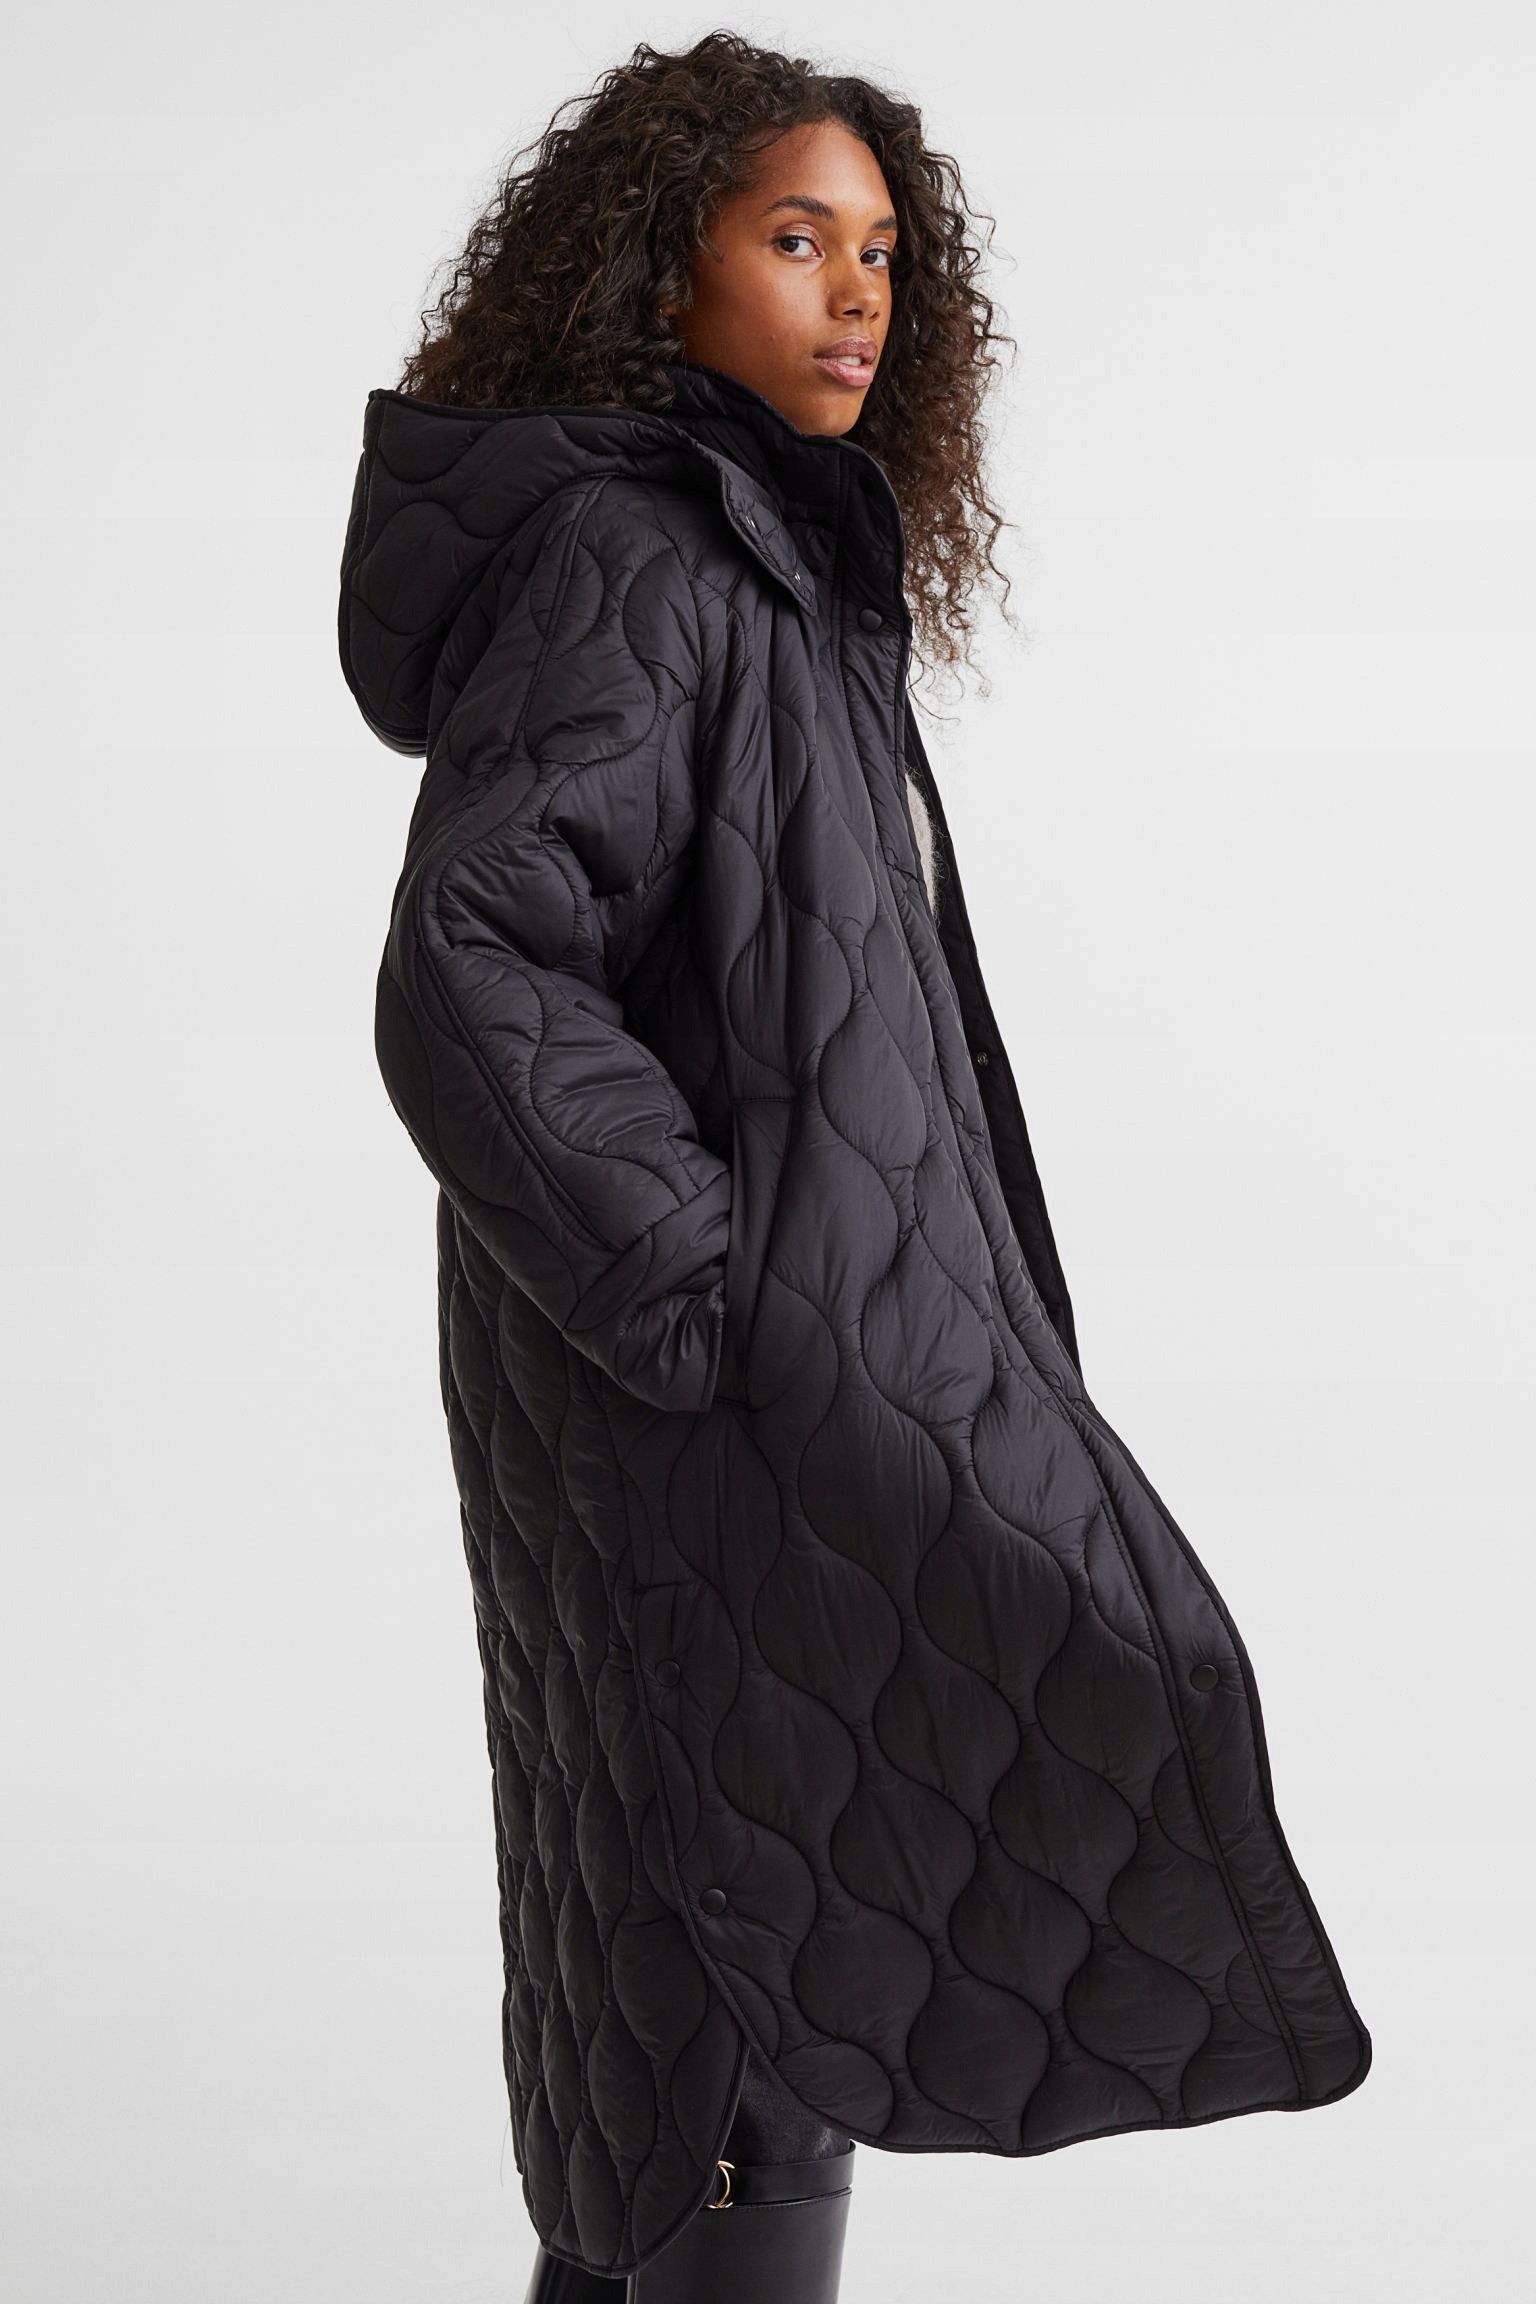 Moda Kurtki Długie kurtki Hennes-Collection D\u0142uga kurtka czarny Pikowany wz\u00f3r W stylu casual 